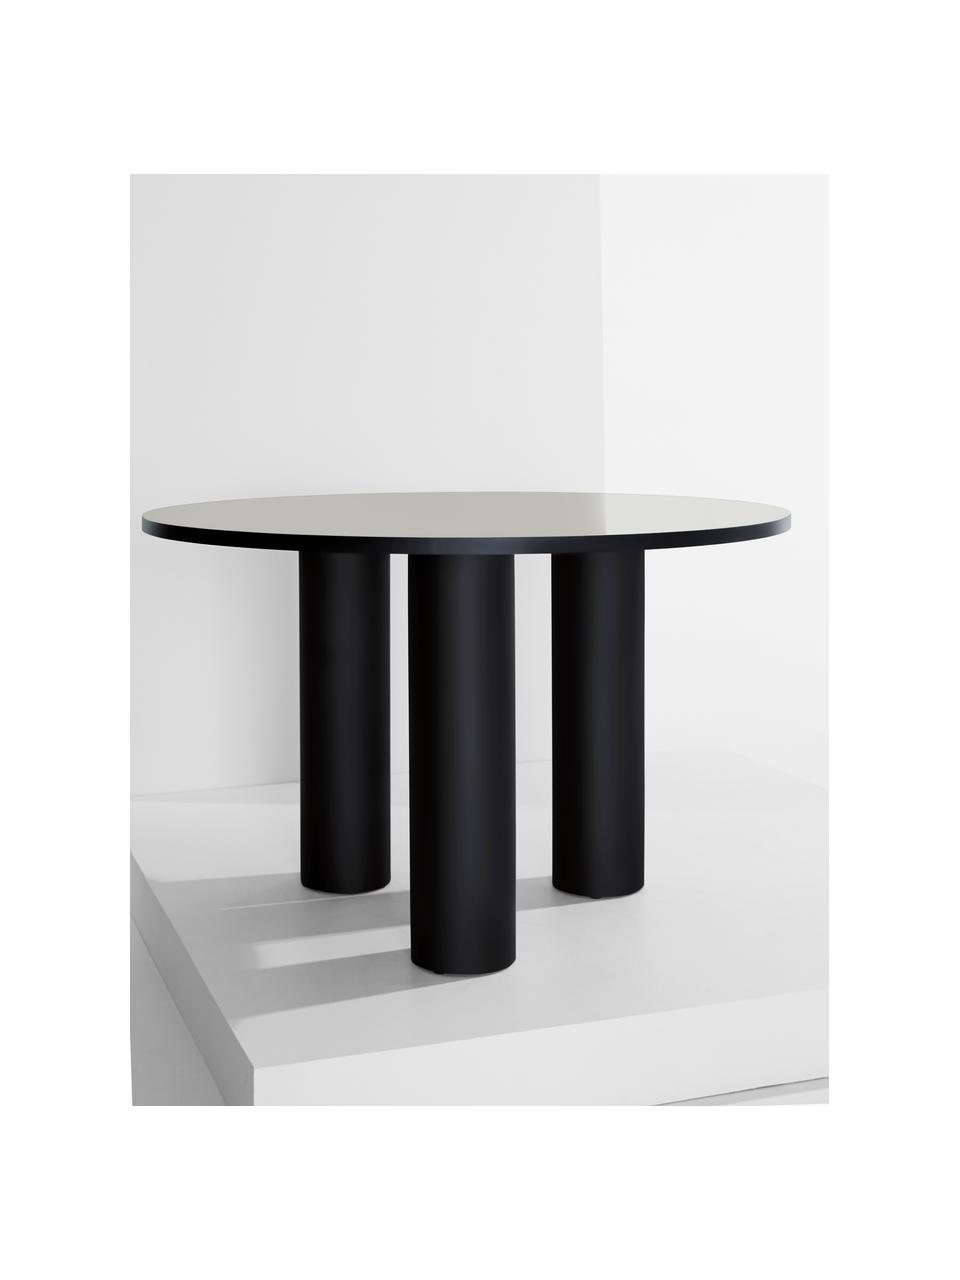 Kulatý jídelní stůl Colette, Ø 120 cm, MDF deska (dřevovláknitá deska střední hustoty) s lakovanou dýhou z ořechového dřeva, certifikace FSC, Černá, Ø 120 cm